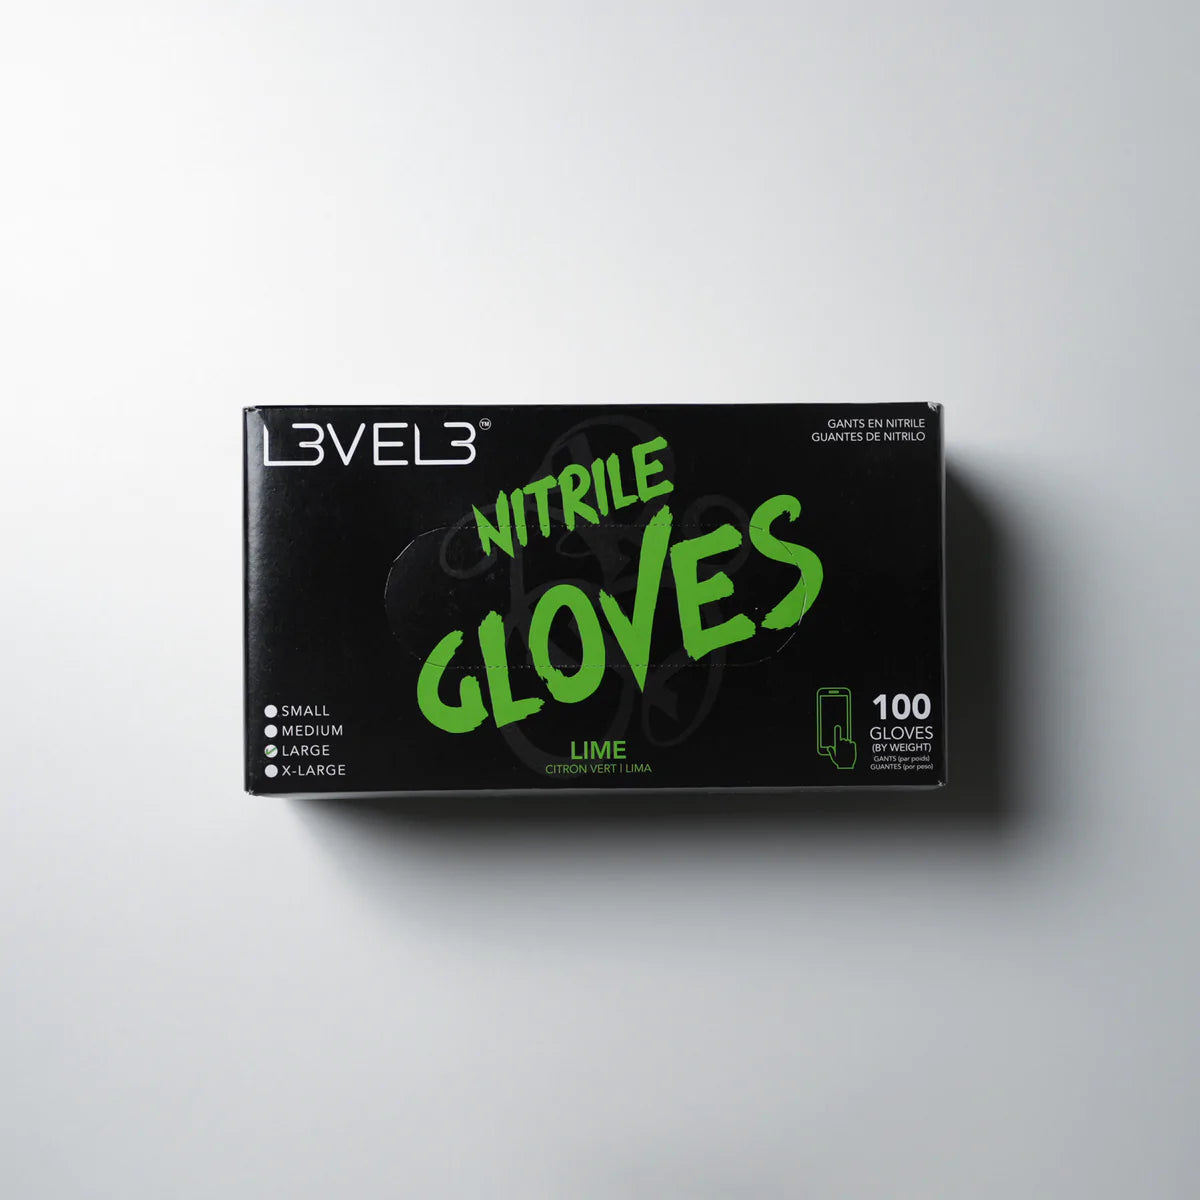 LV3 Nitrile Gloves Lime